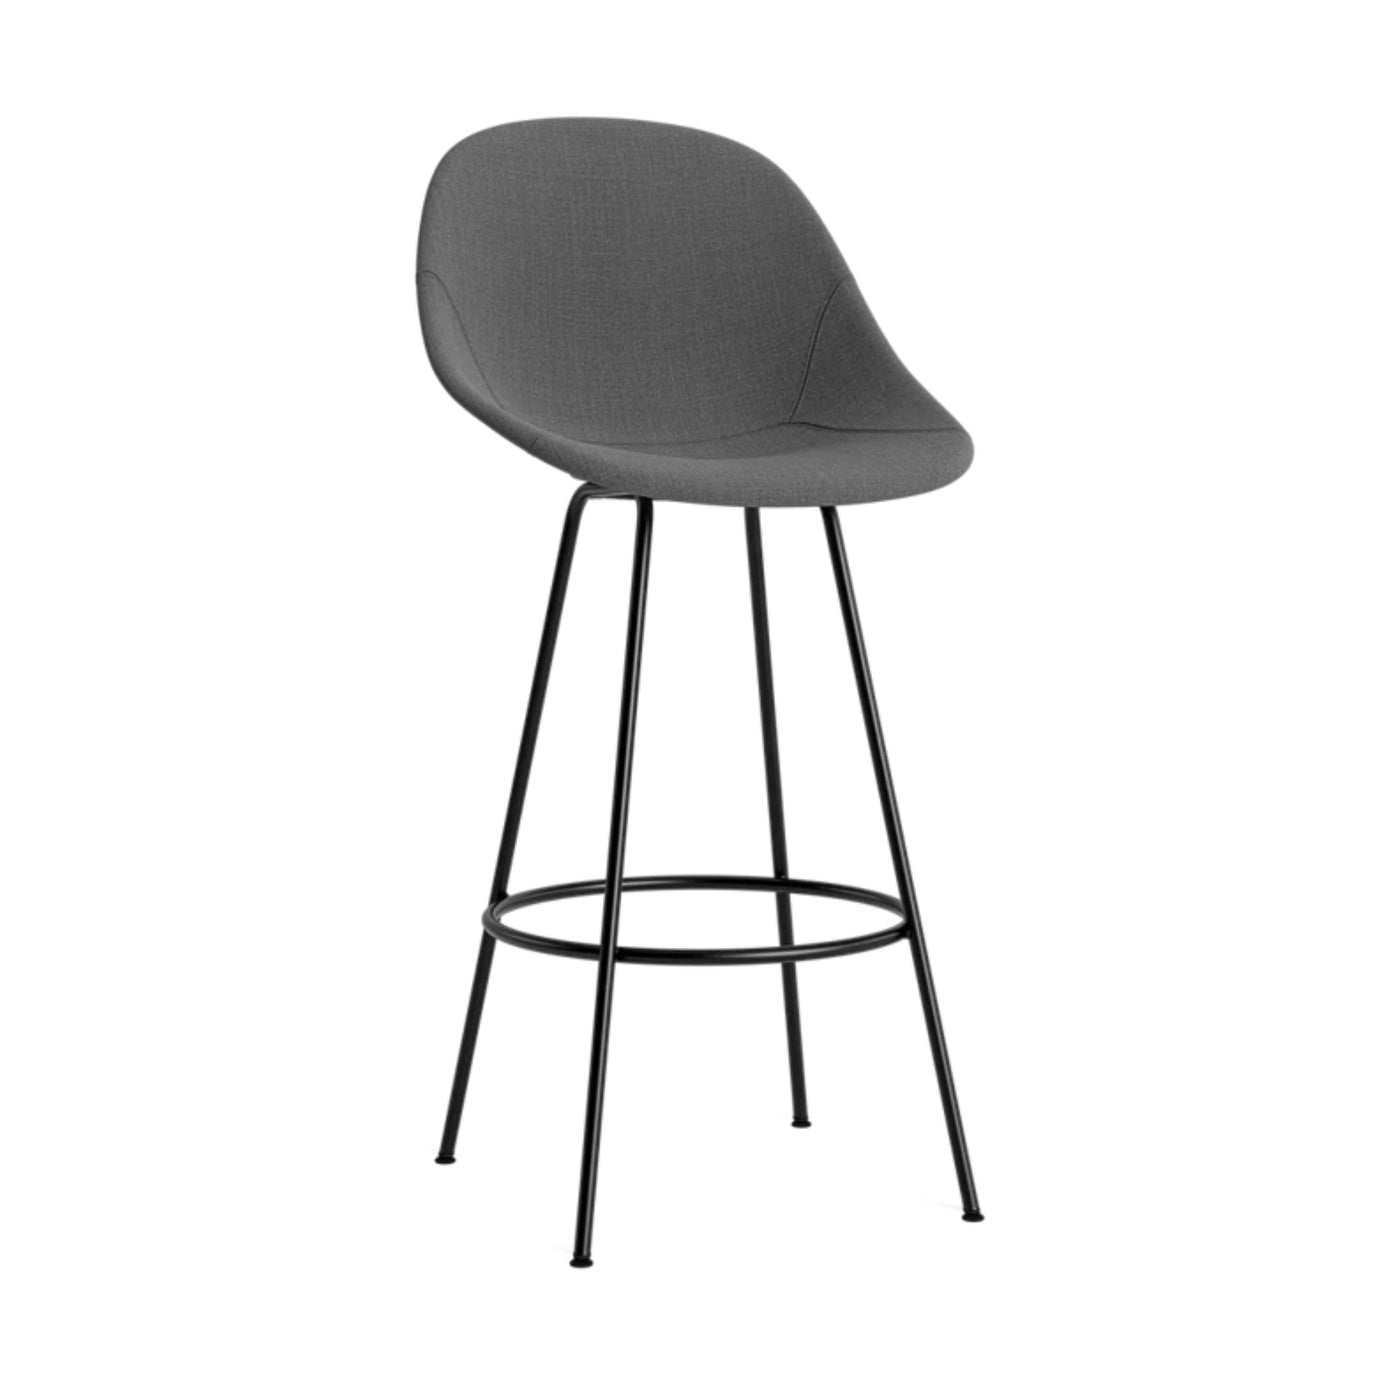 Normann Copenhagen Mat Bar Chair. Shop now at someday designs. #colour_remix-163